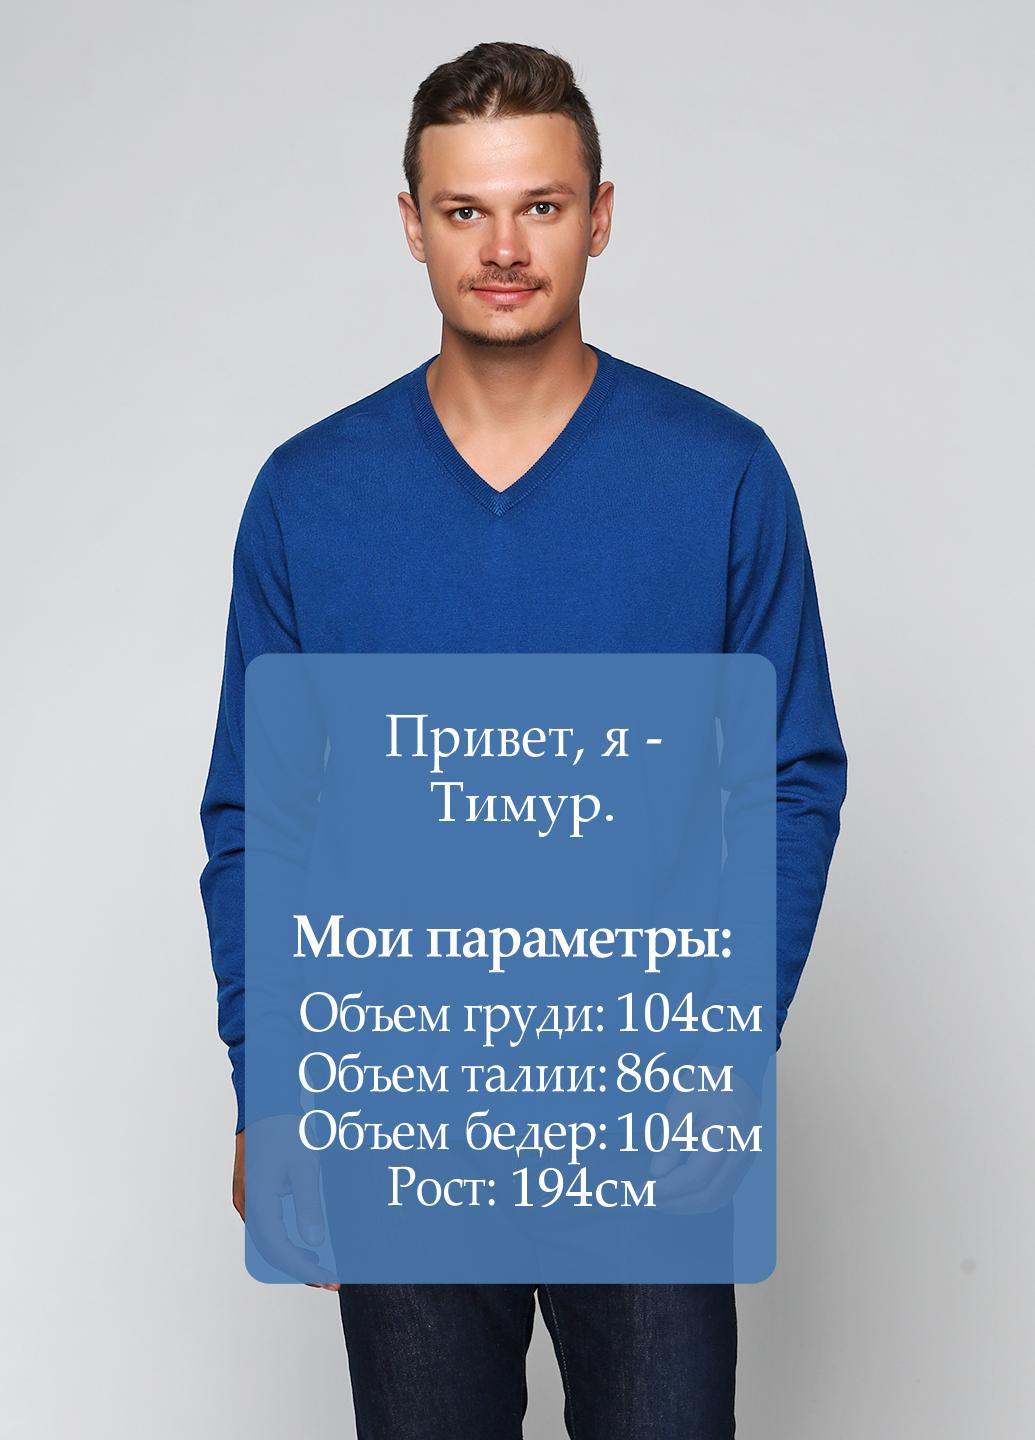 Синій демісезонний пуловер пуловер Pierre Balmain